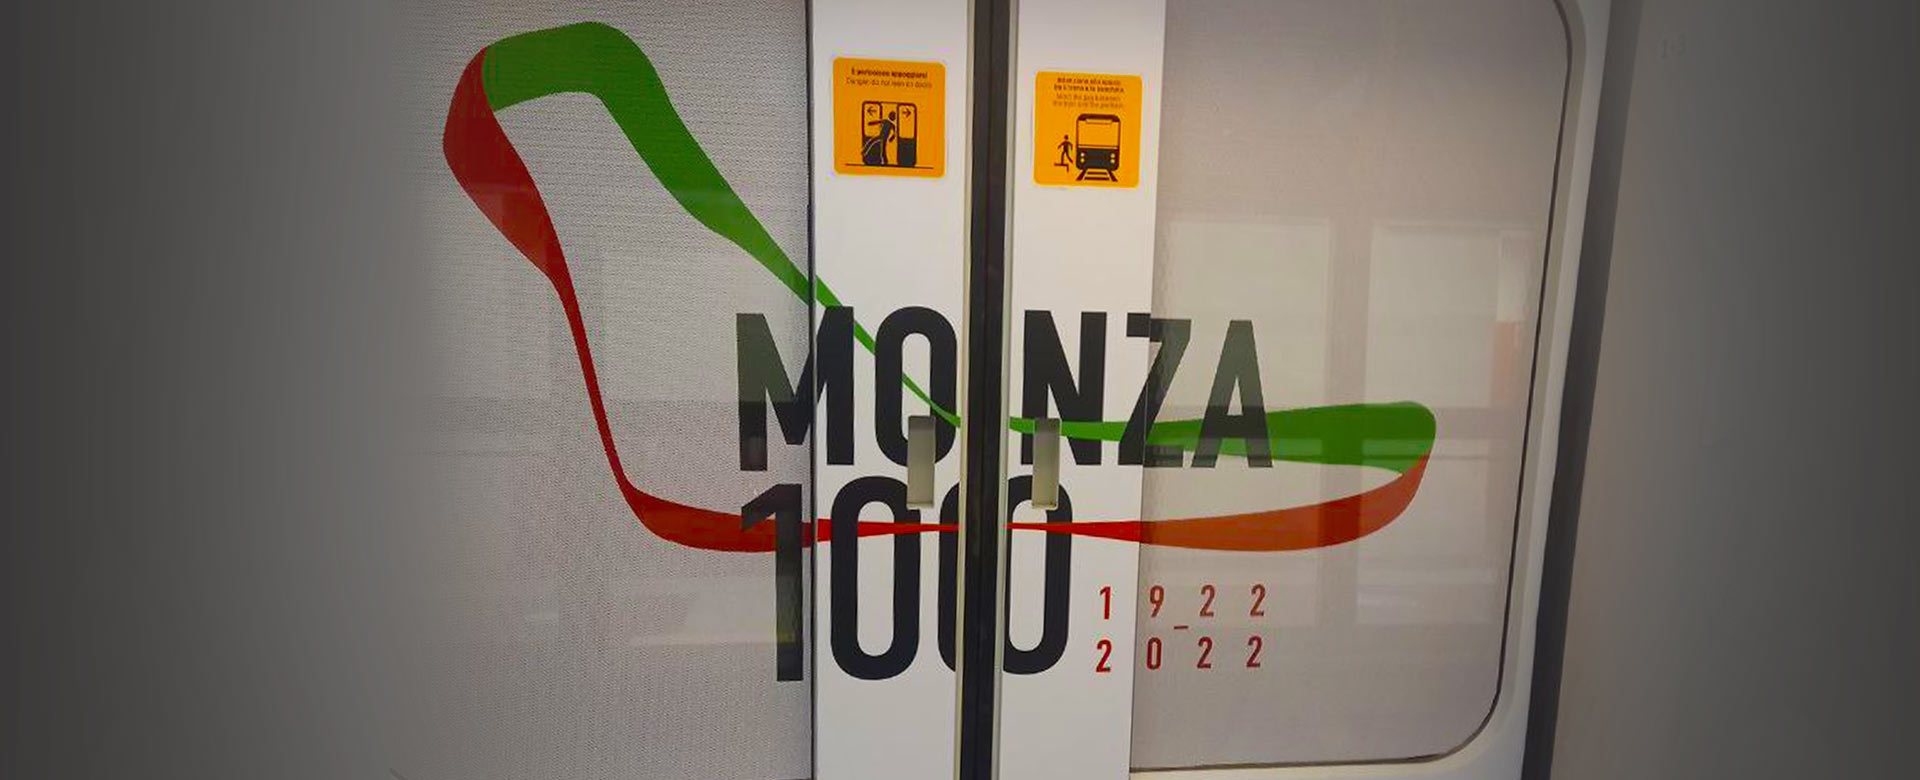 La grafica del treno M5 per i 100 anni dell'autodromo di Monza